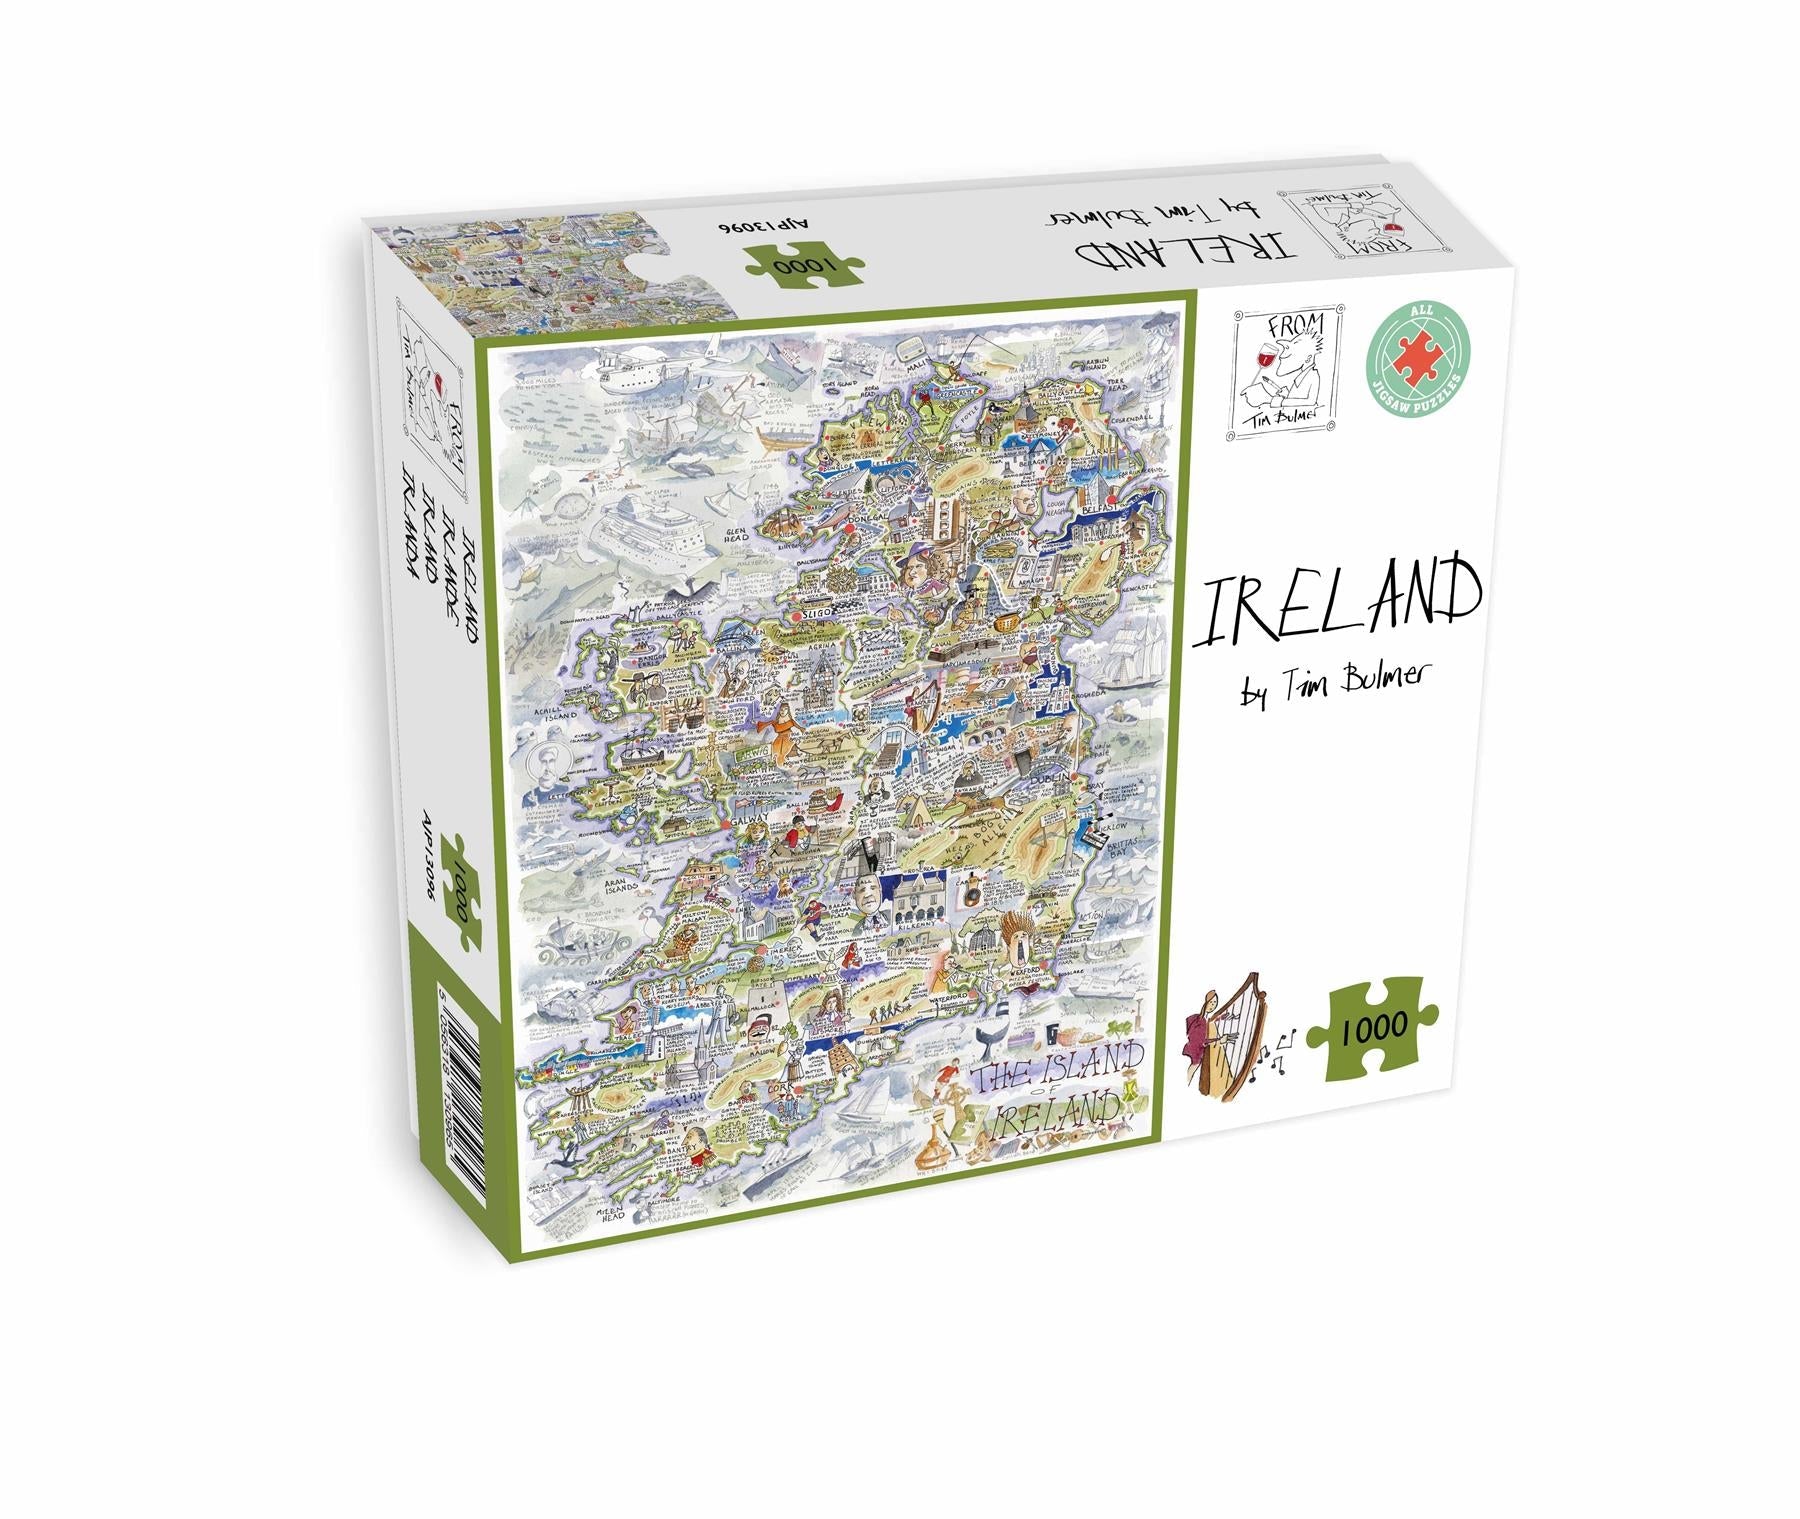 Ireland - Tim Bulmer 1000 Piece Jigsaw Puzzle box